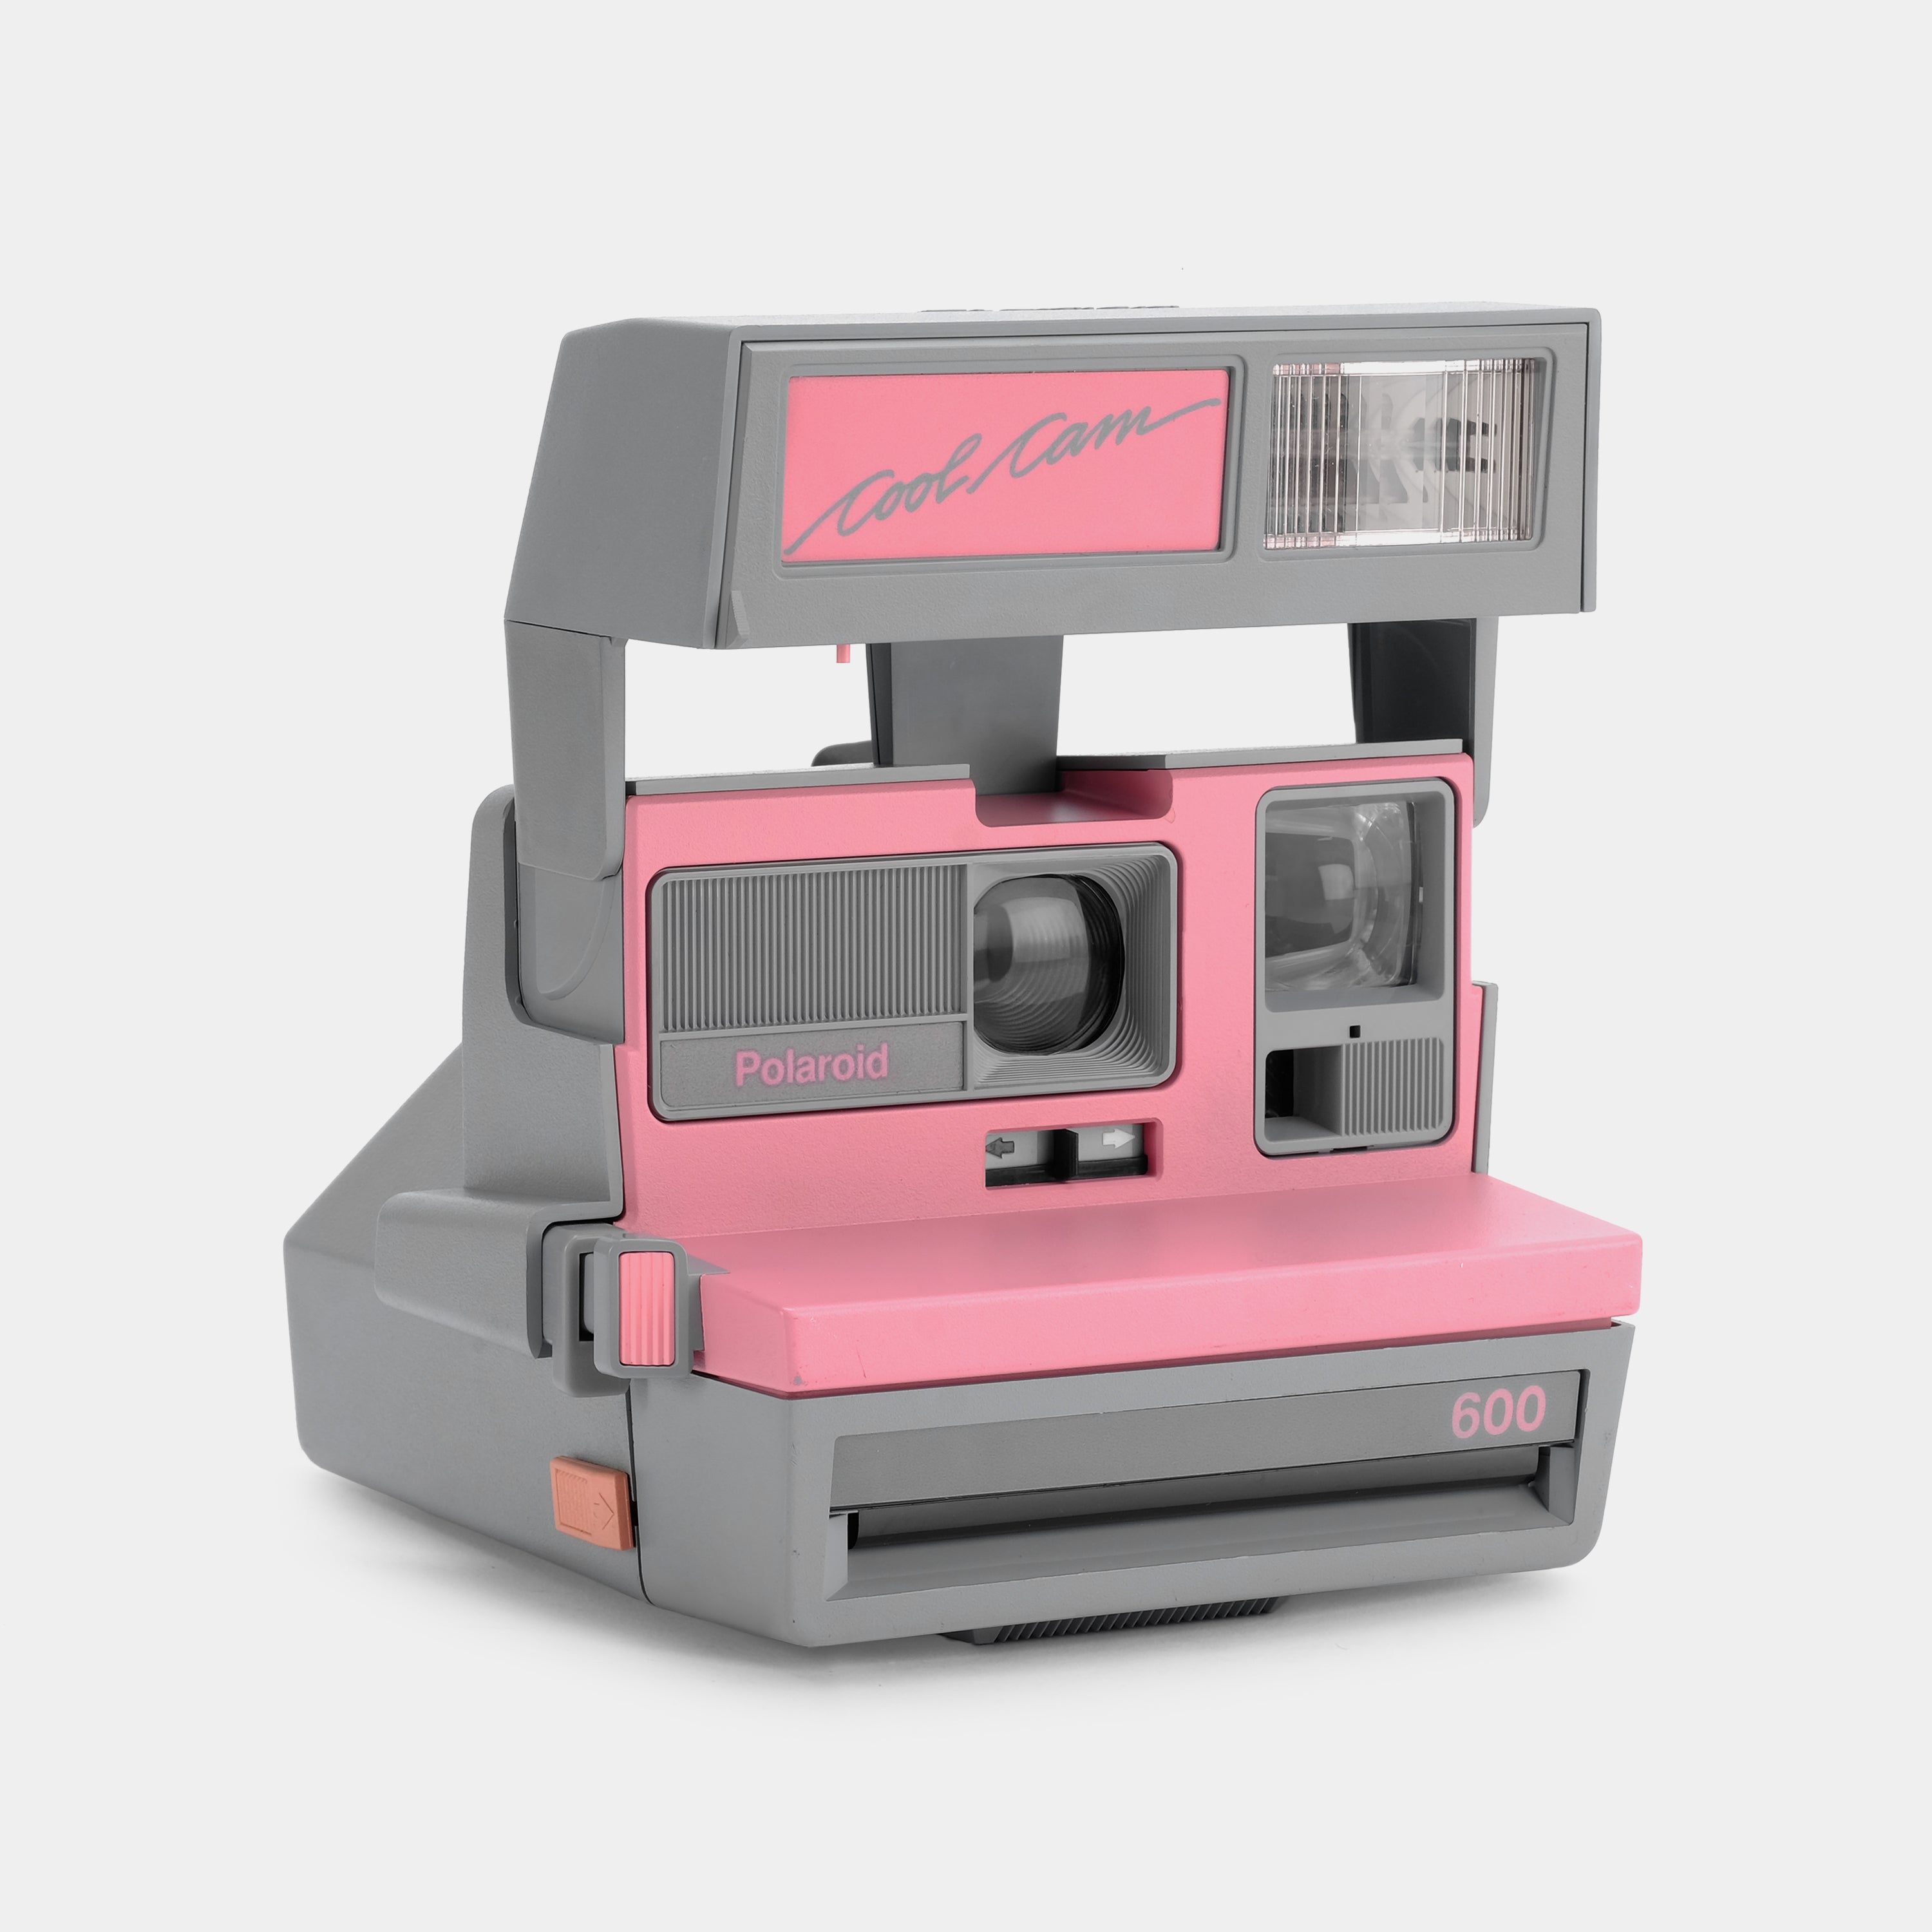 Polaroid 600 Cool Cam Pink Instant Film Camera